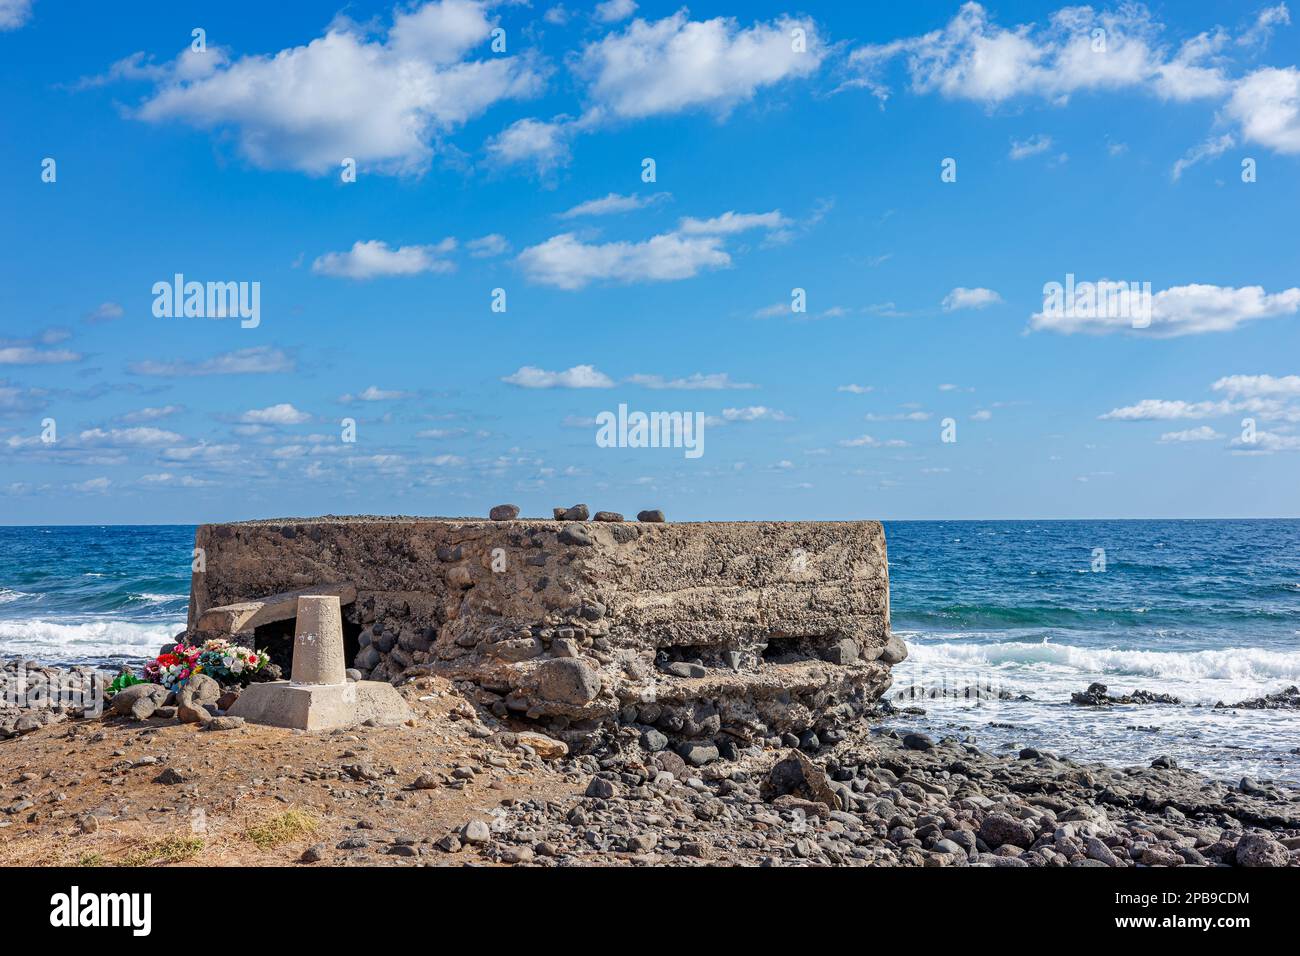 Ruinen in einer ziemlich guten Form eines Kalkofens. Kalk war ein Exportprodukt in der Geschichte der Insel. Hornos de cal de la Hondura, Fuerteventura, Kanarische Inseln Stockfoto